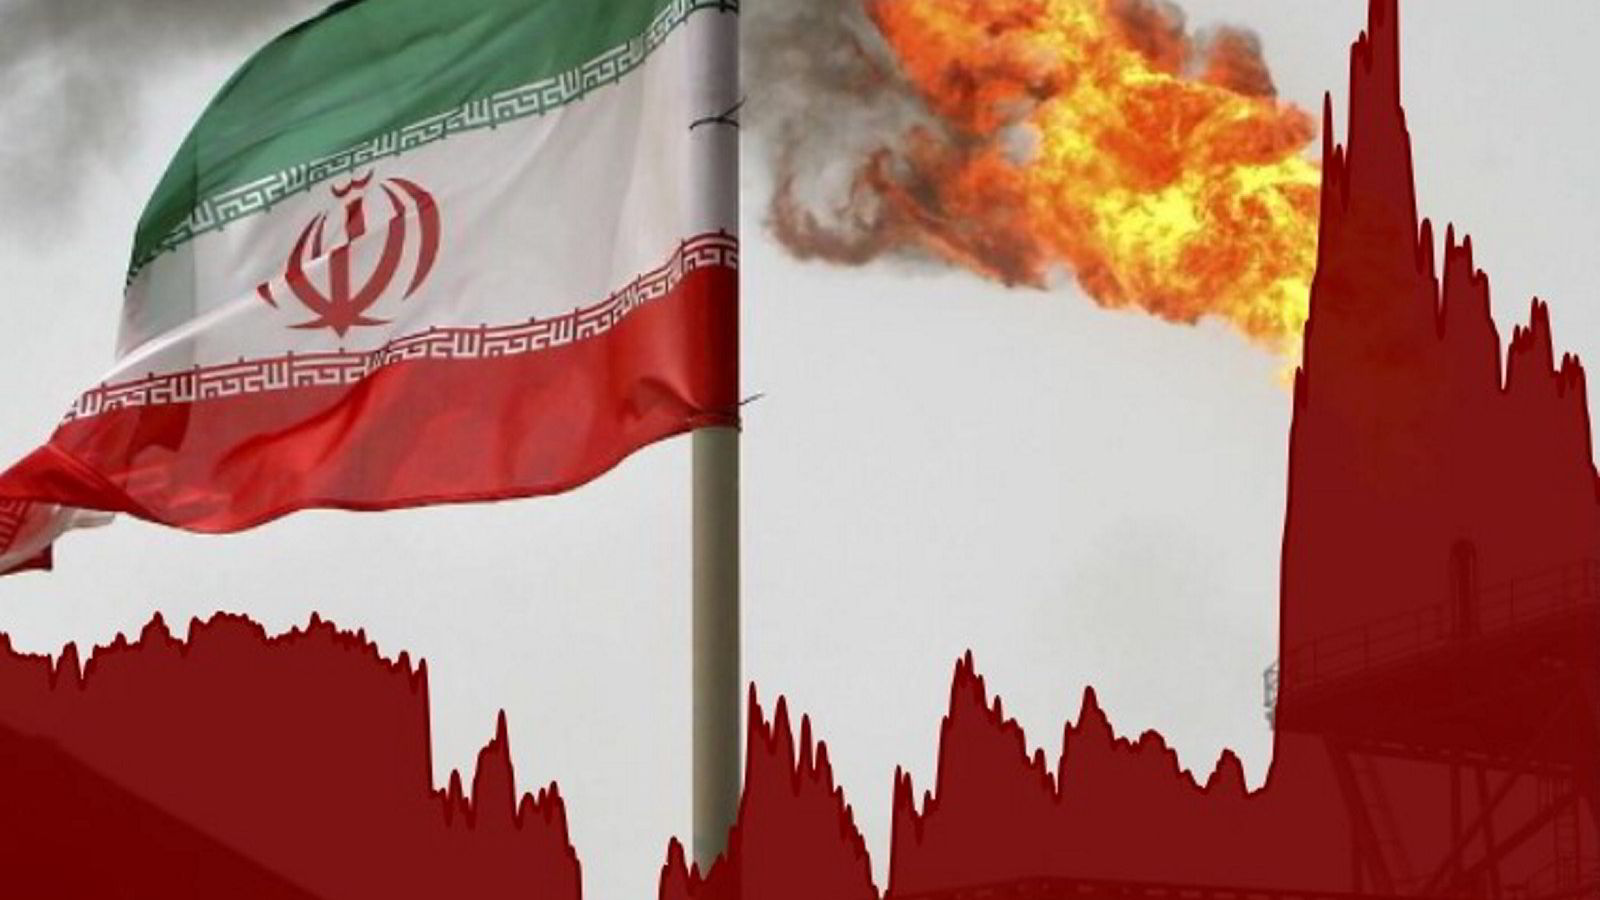 Oljeprisen ble løftet kraftig etter meldinger om eksplosjoner i Iran